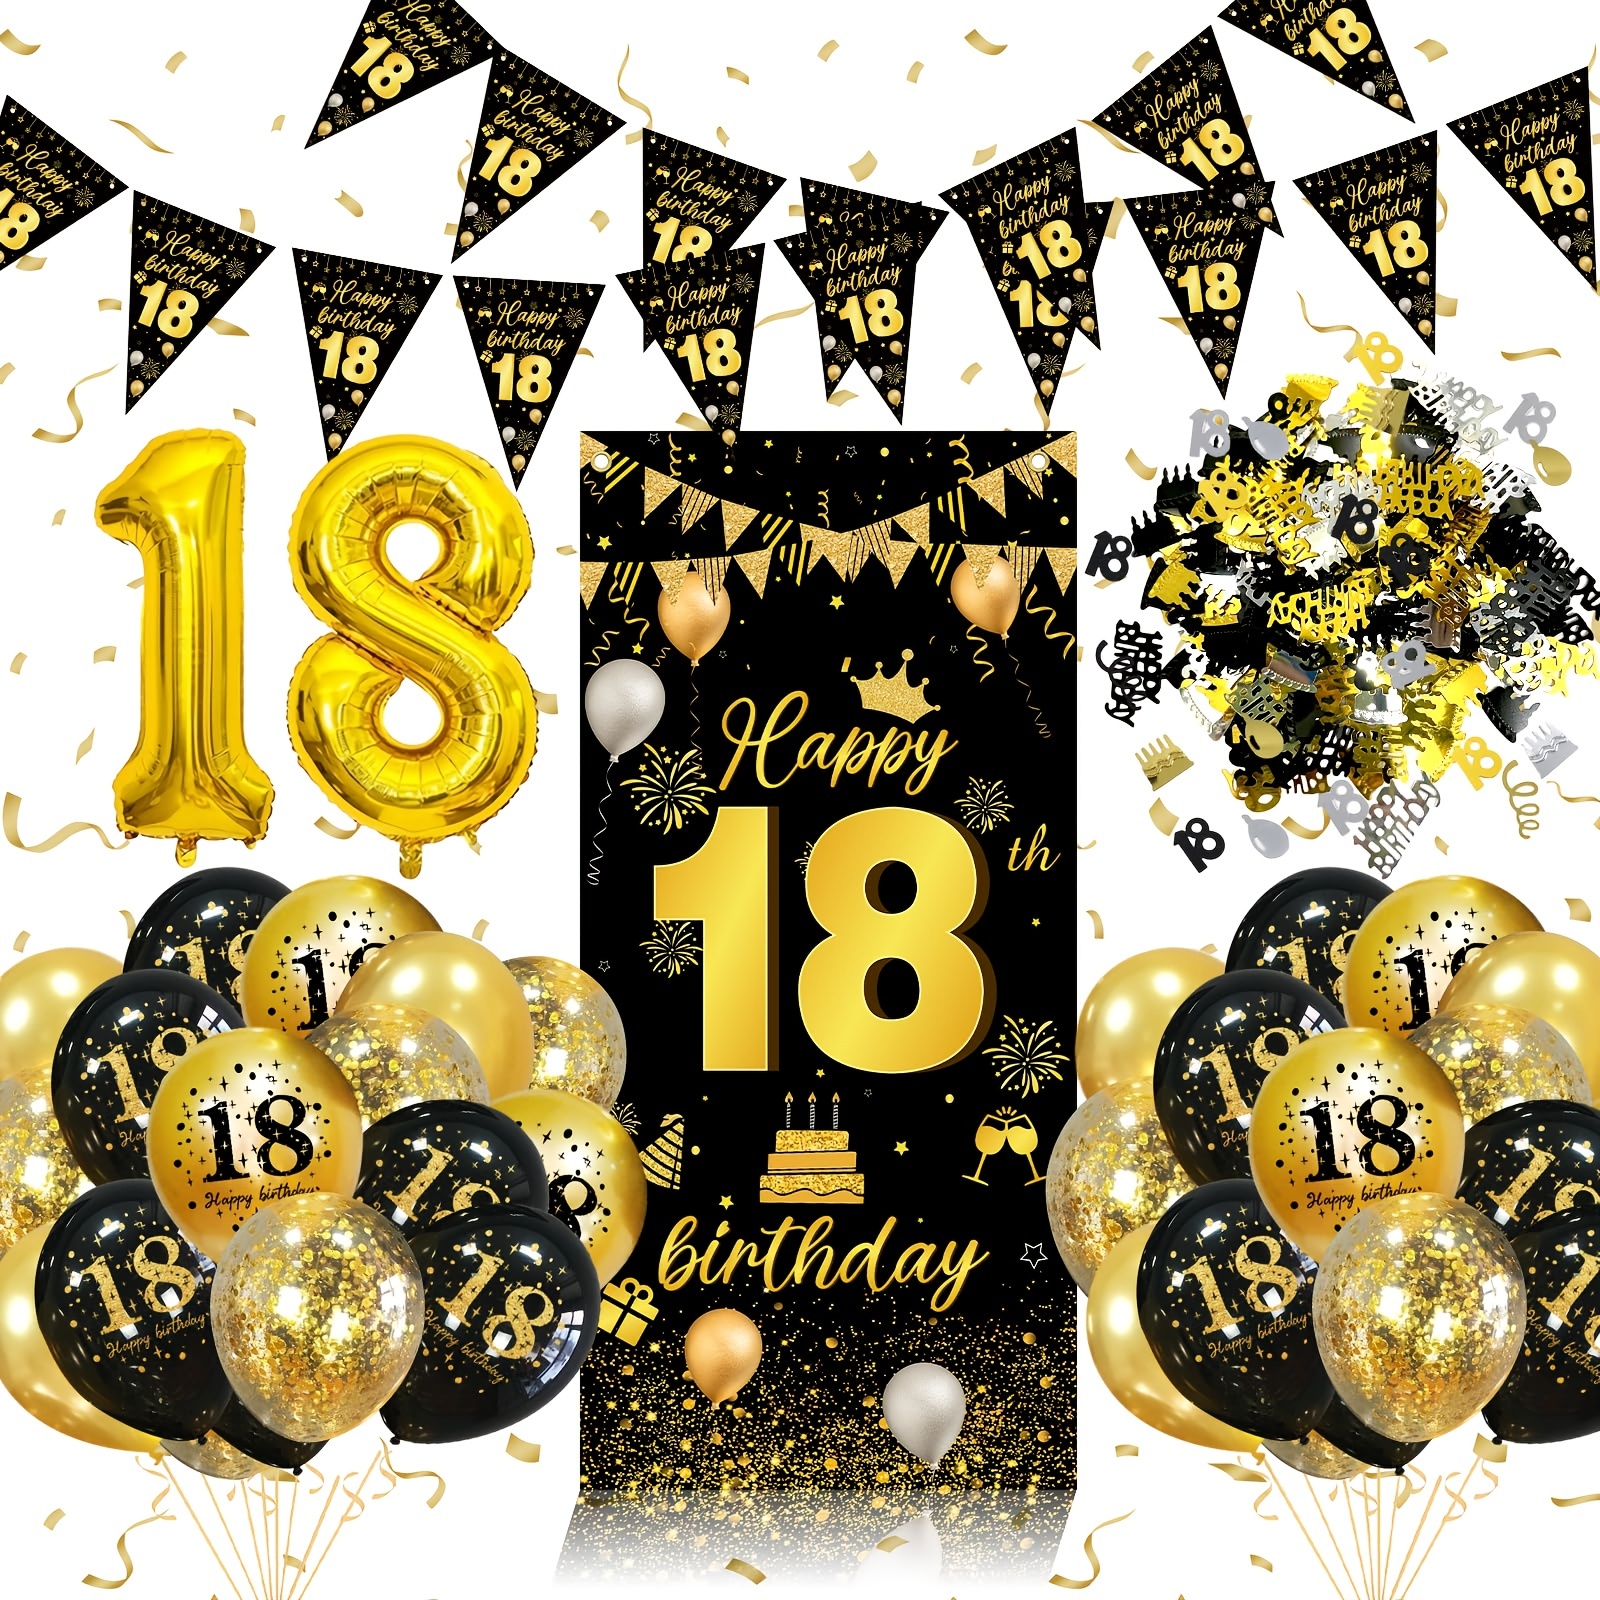 Celebración del aniversario de 18 años con marco dorado y brillo dorado  sobre fondo negro. diseño